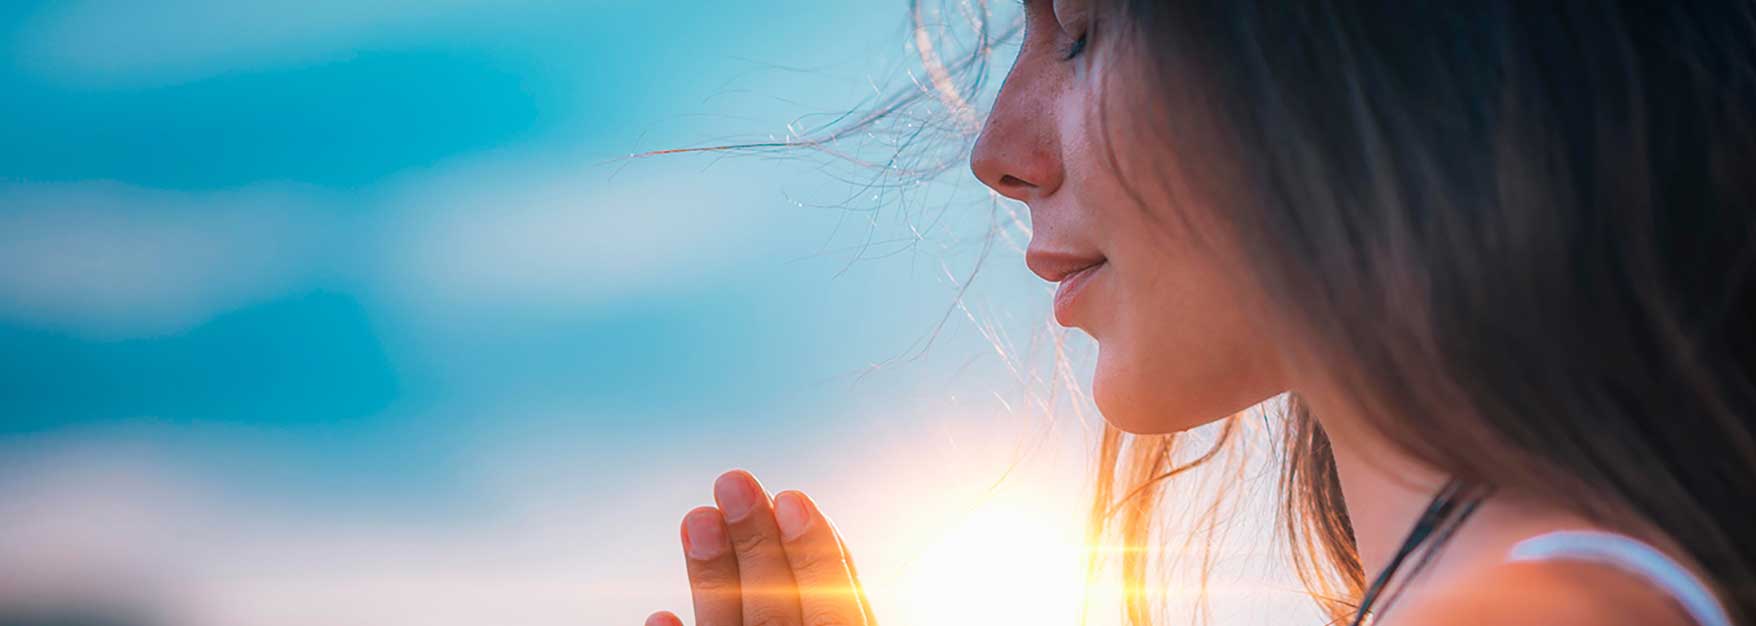 Приложение для медитации, как инструмент вашего спокойствия